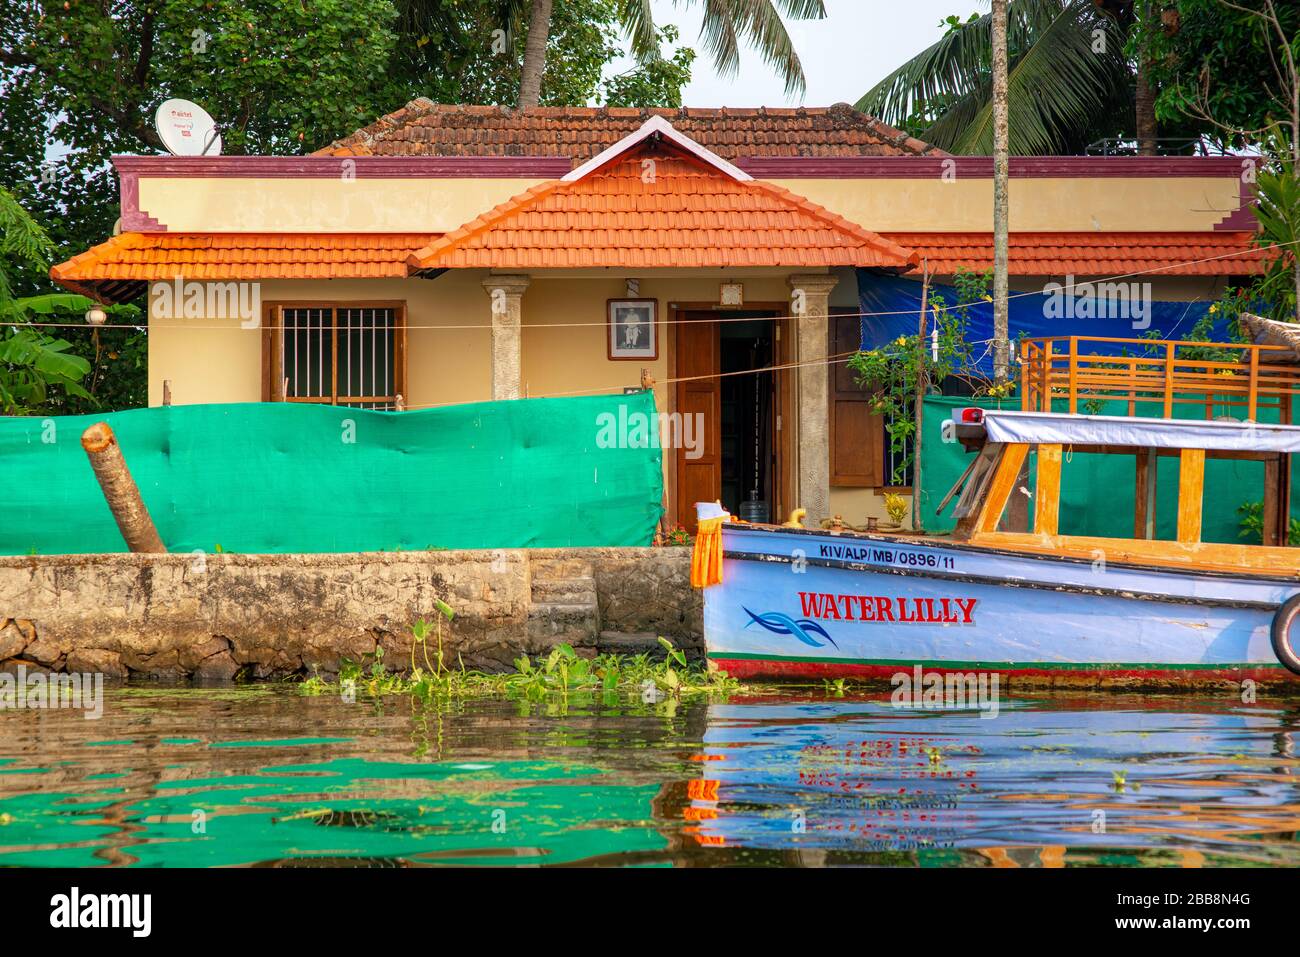 Alleppey, Kerala, Indien - 30. März 2018: Ein kleines traditionelles Haus am Rande eines Kanals und ein farbenfrohes, meist violettes Boot. Aufgenommen in Stockfoto